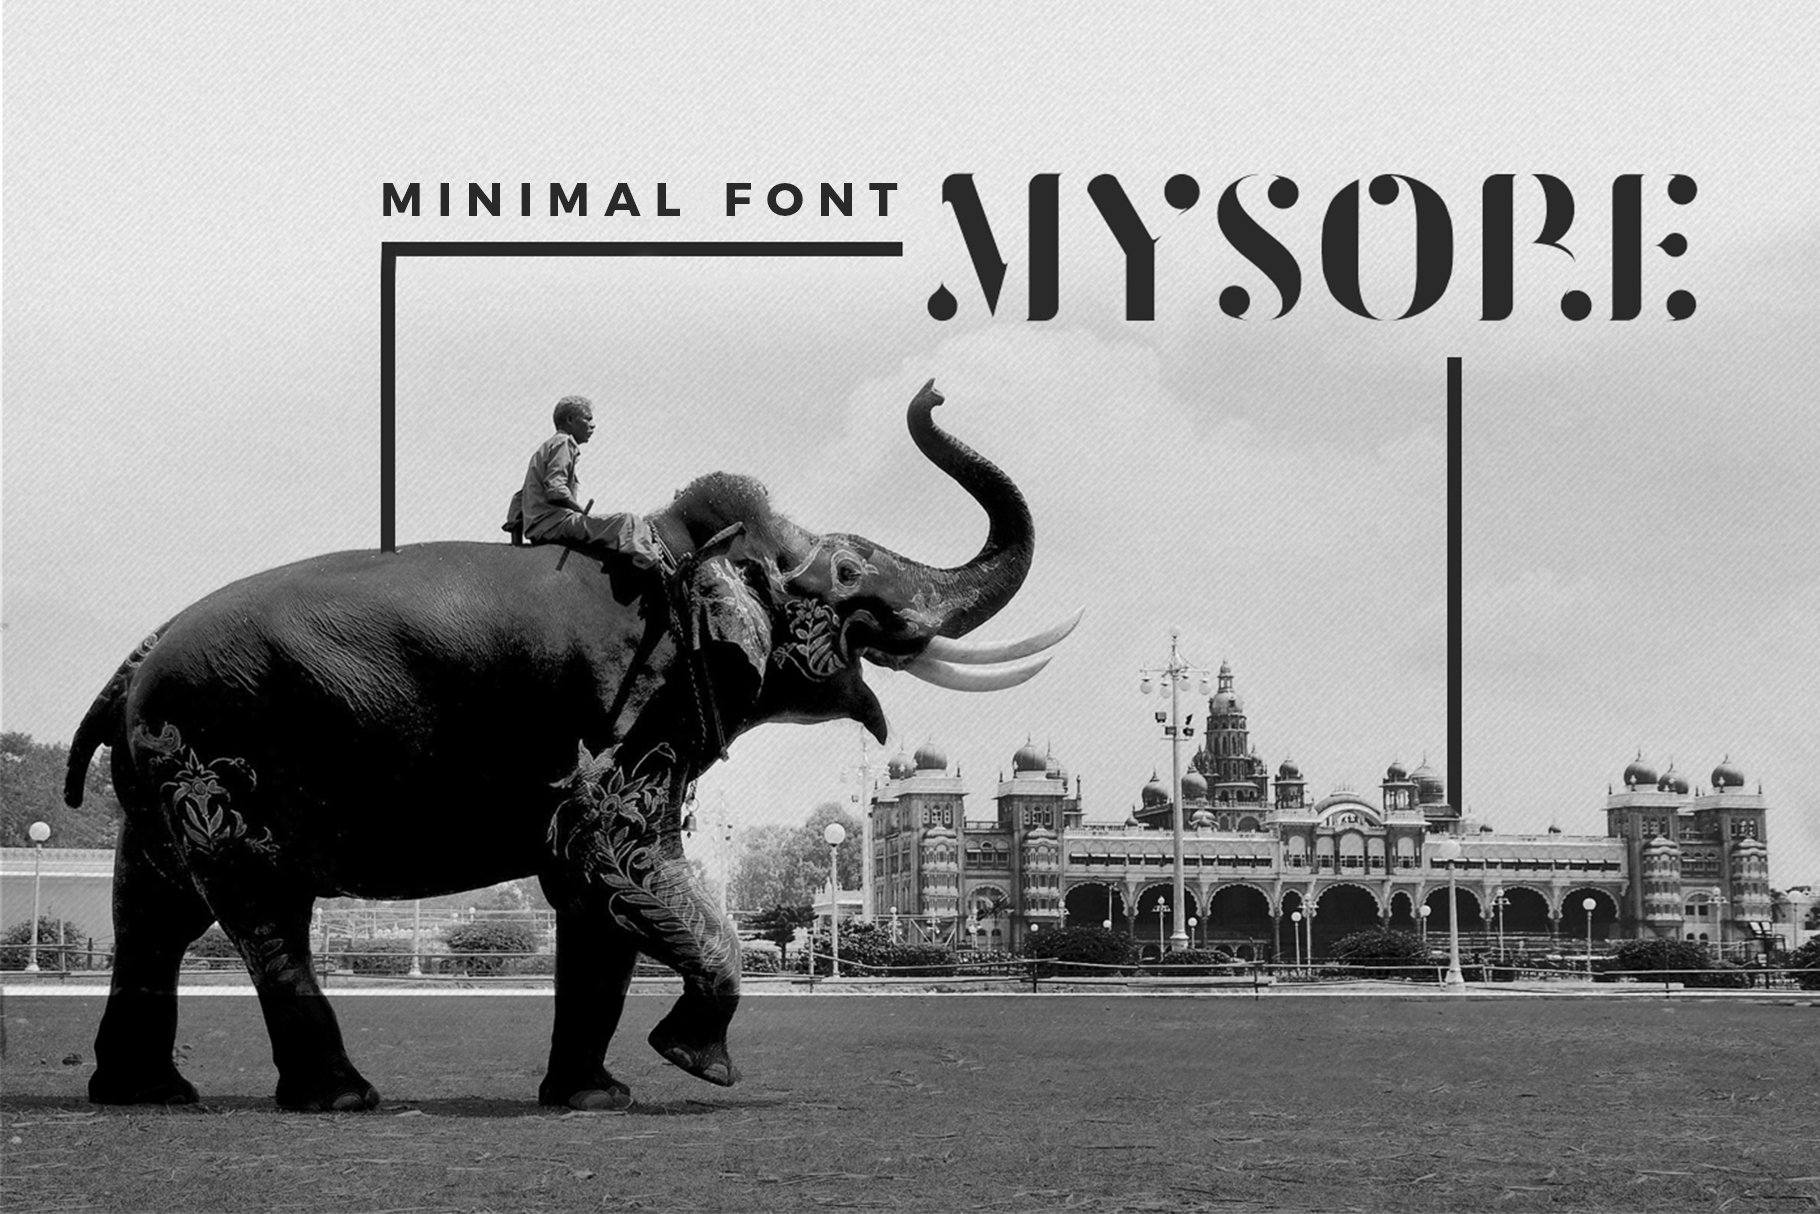 Mysore Font cover image.